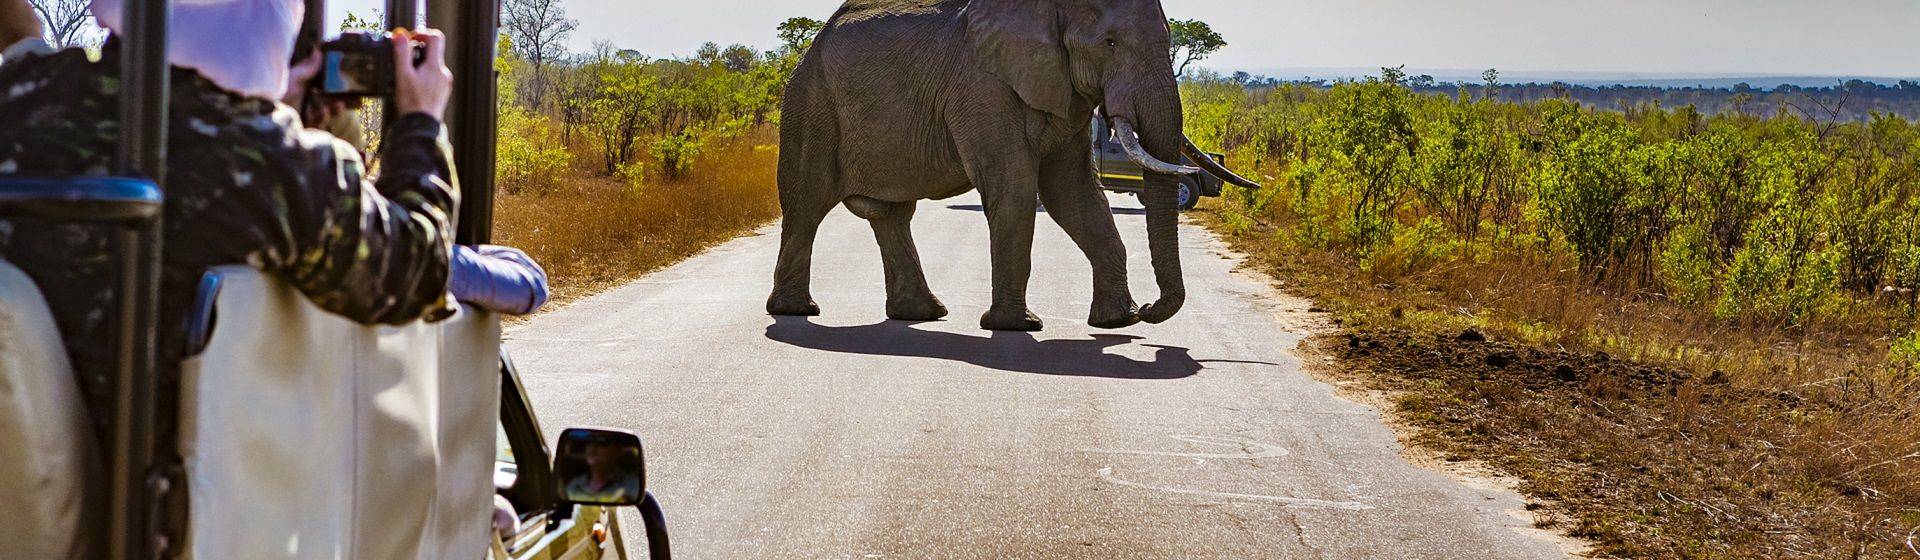 Holidays to Kruger National Park Image